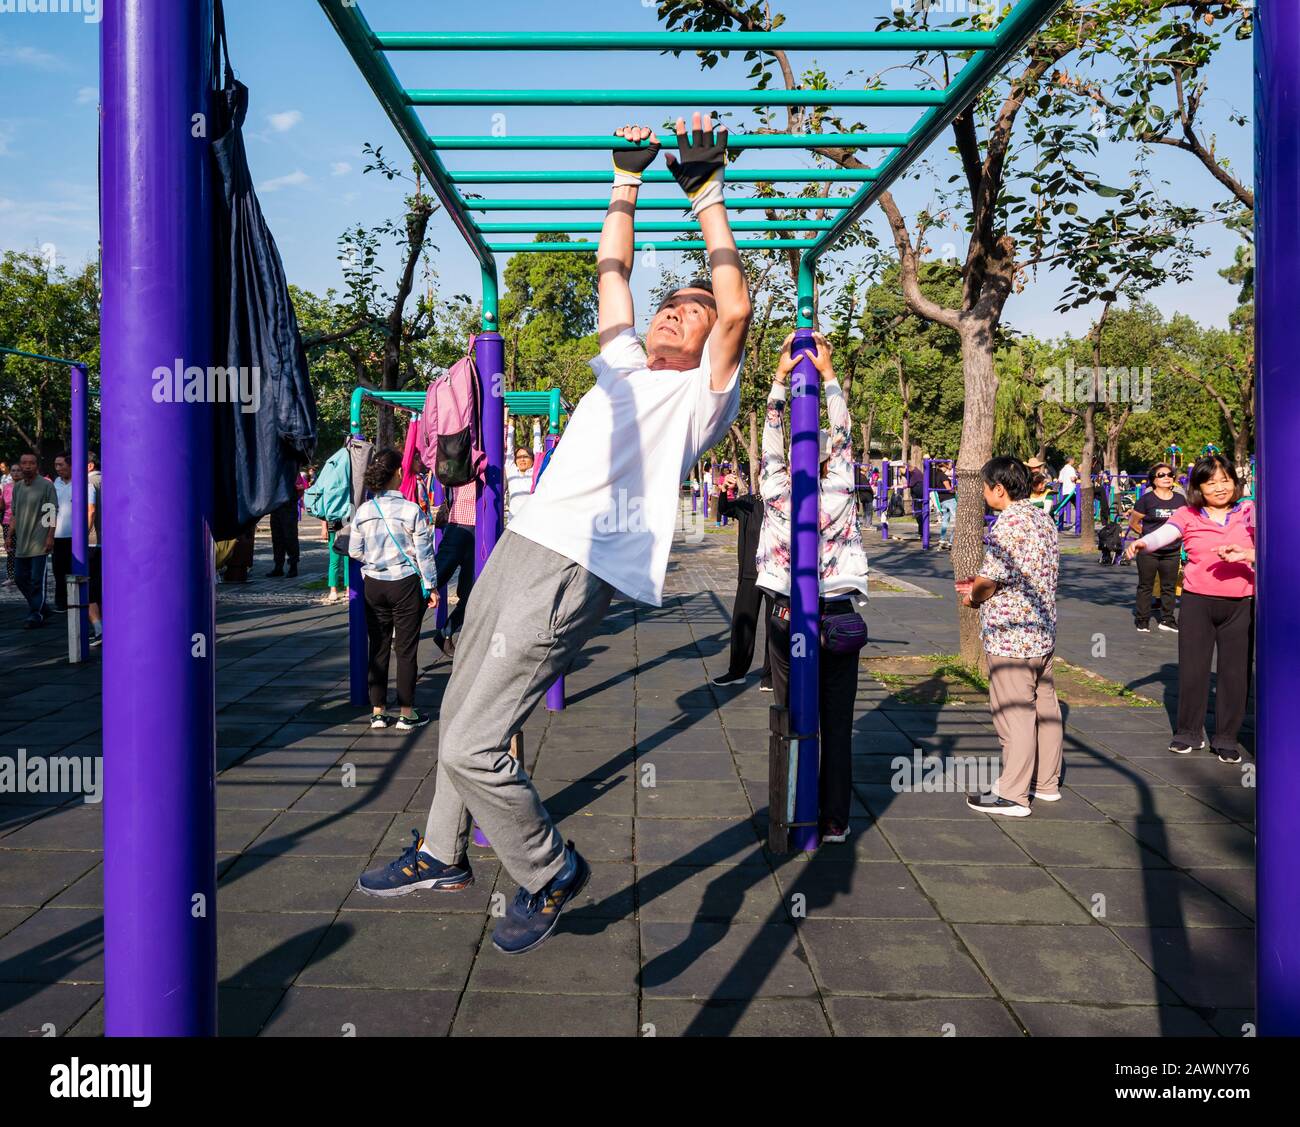 Homme chinois plus âgé exerçant dans une salle de gym extérieure se balançant sur des rails de bar, Tiantan Park, Beijing, Chine, Asie Banque D'Images